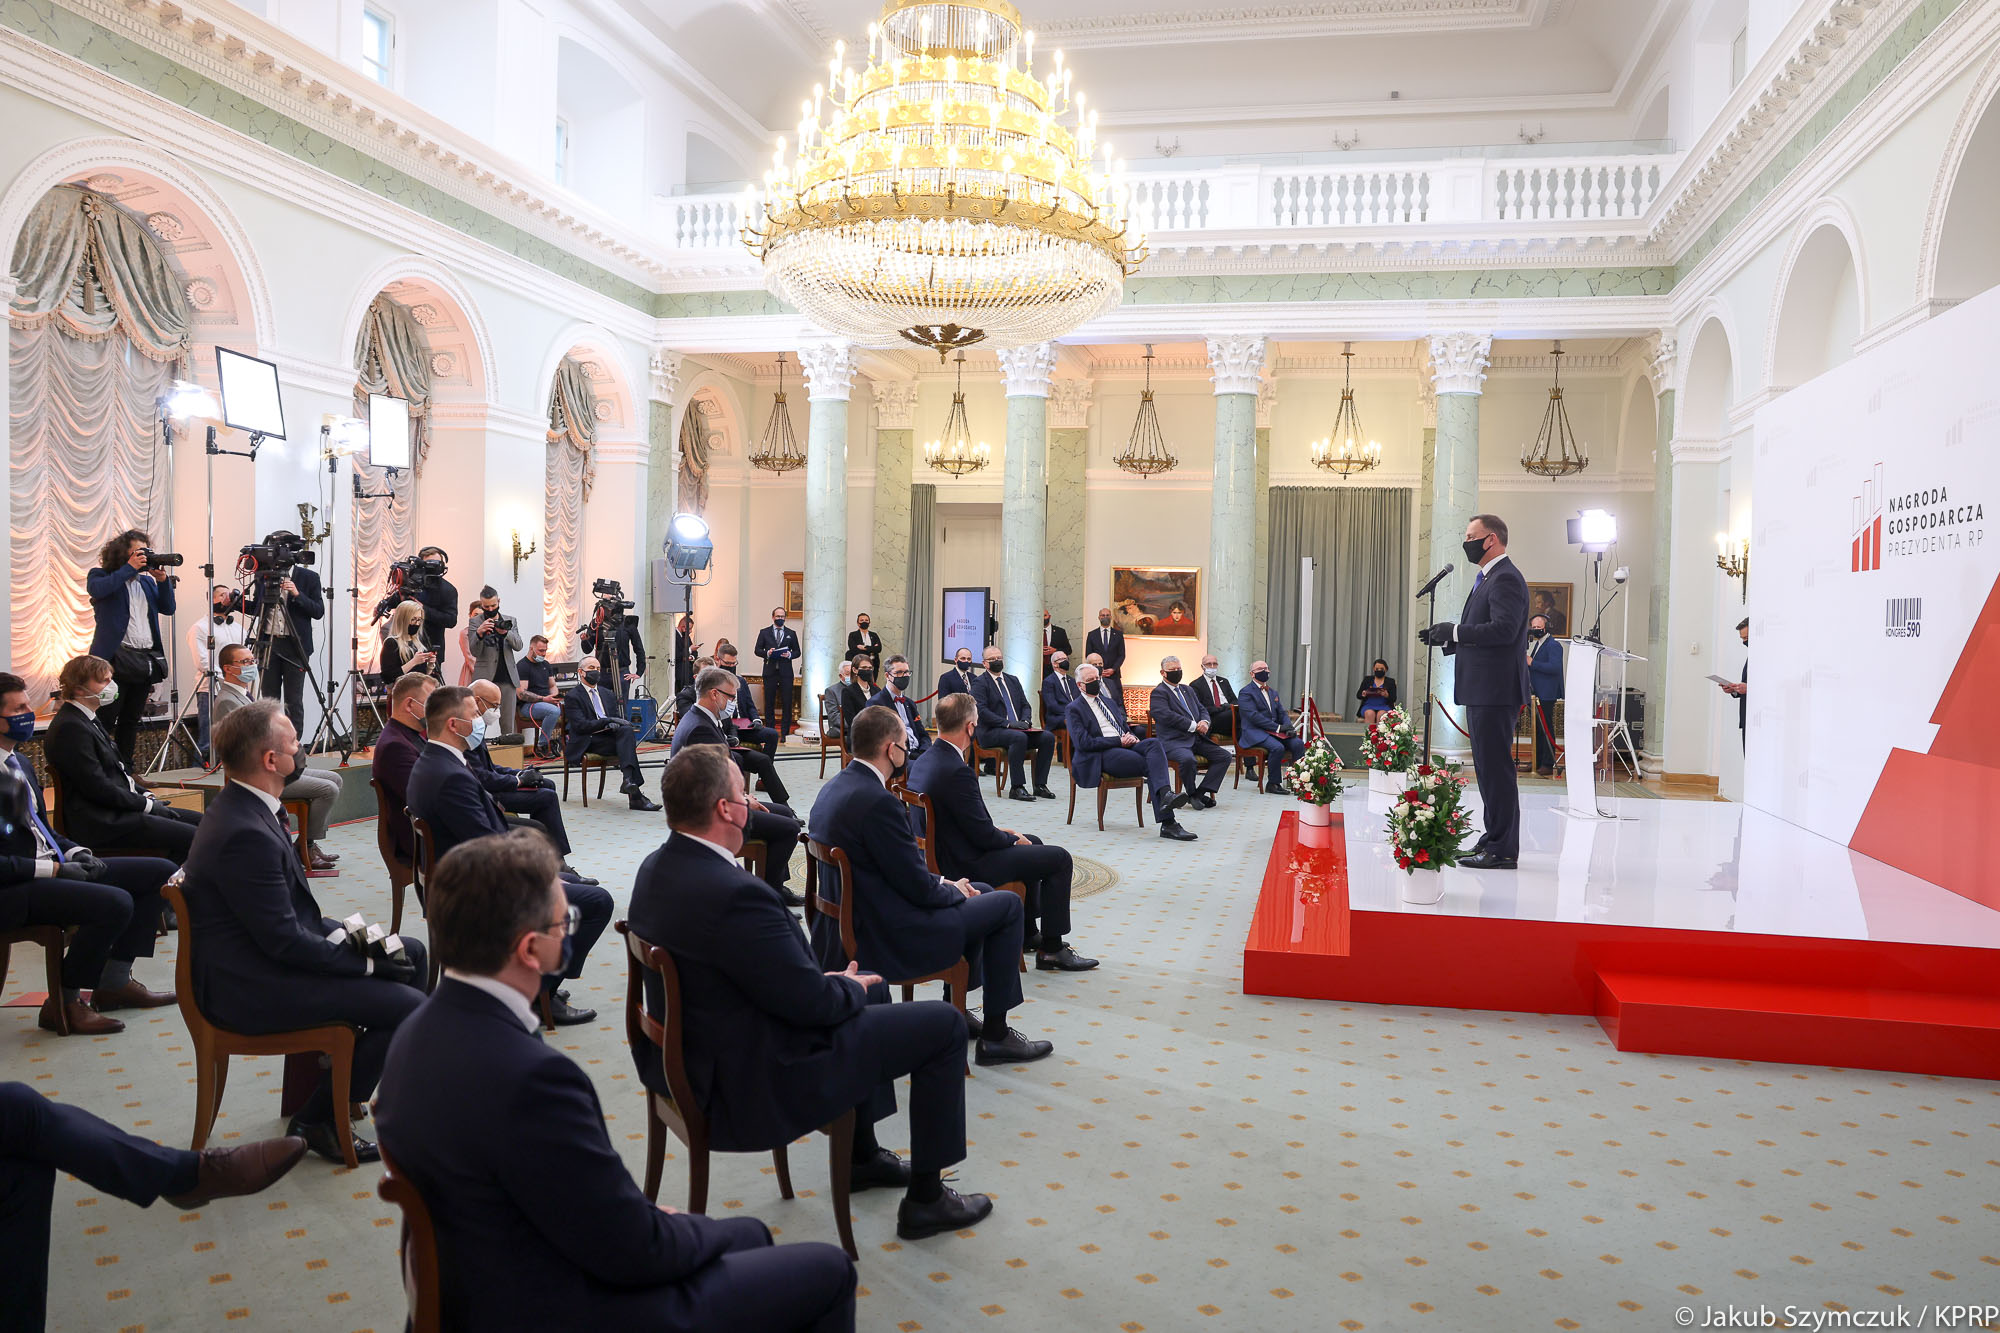 Gala finałowa w Pałacu Prezydenckim. Prezydent RP przemawia do zgromadzonych gości.